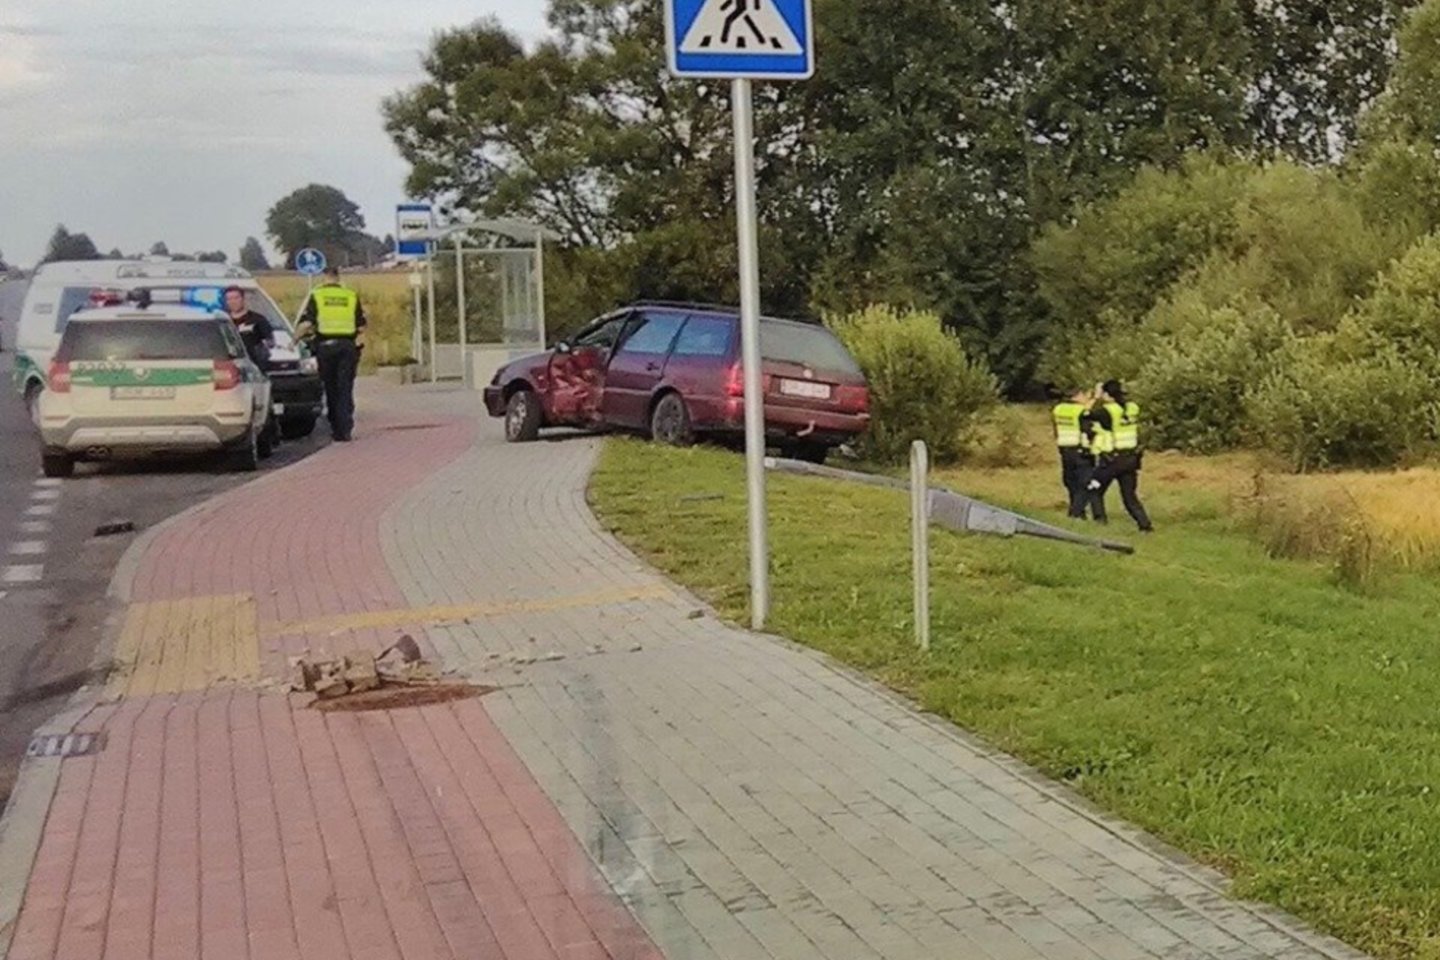  Biržų policija rimtai perspėja: automobilių pirkimas – pavojingas reikalas.<br> Facebook/Biržų rajono policijos komisariatas nuotr.